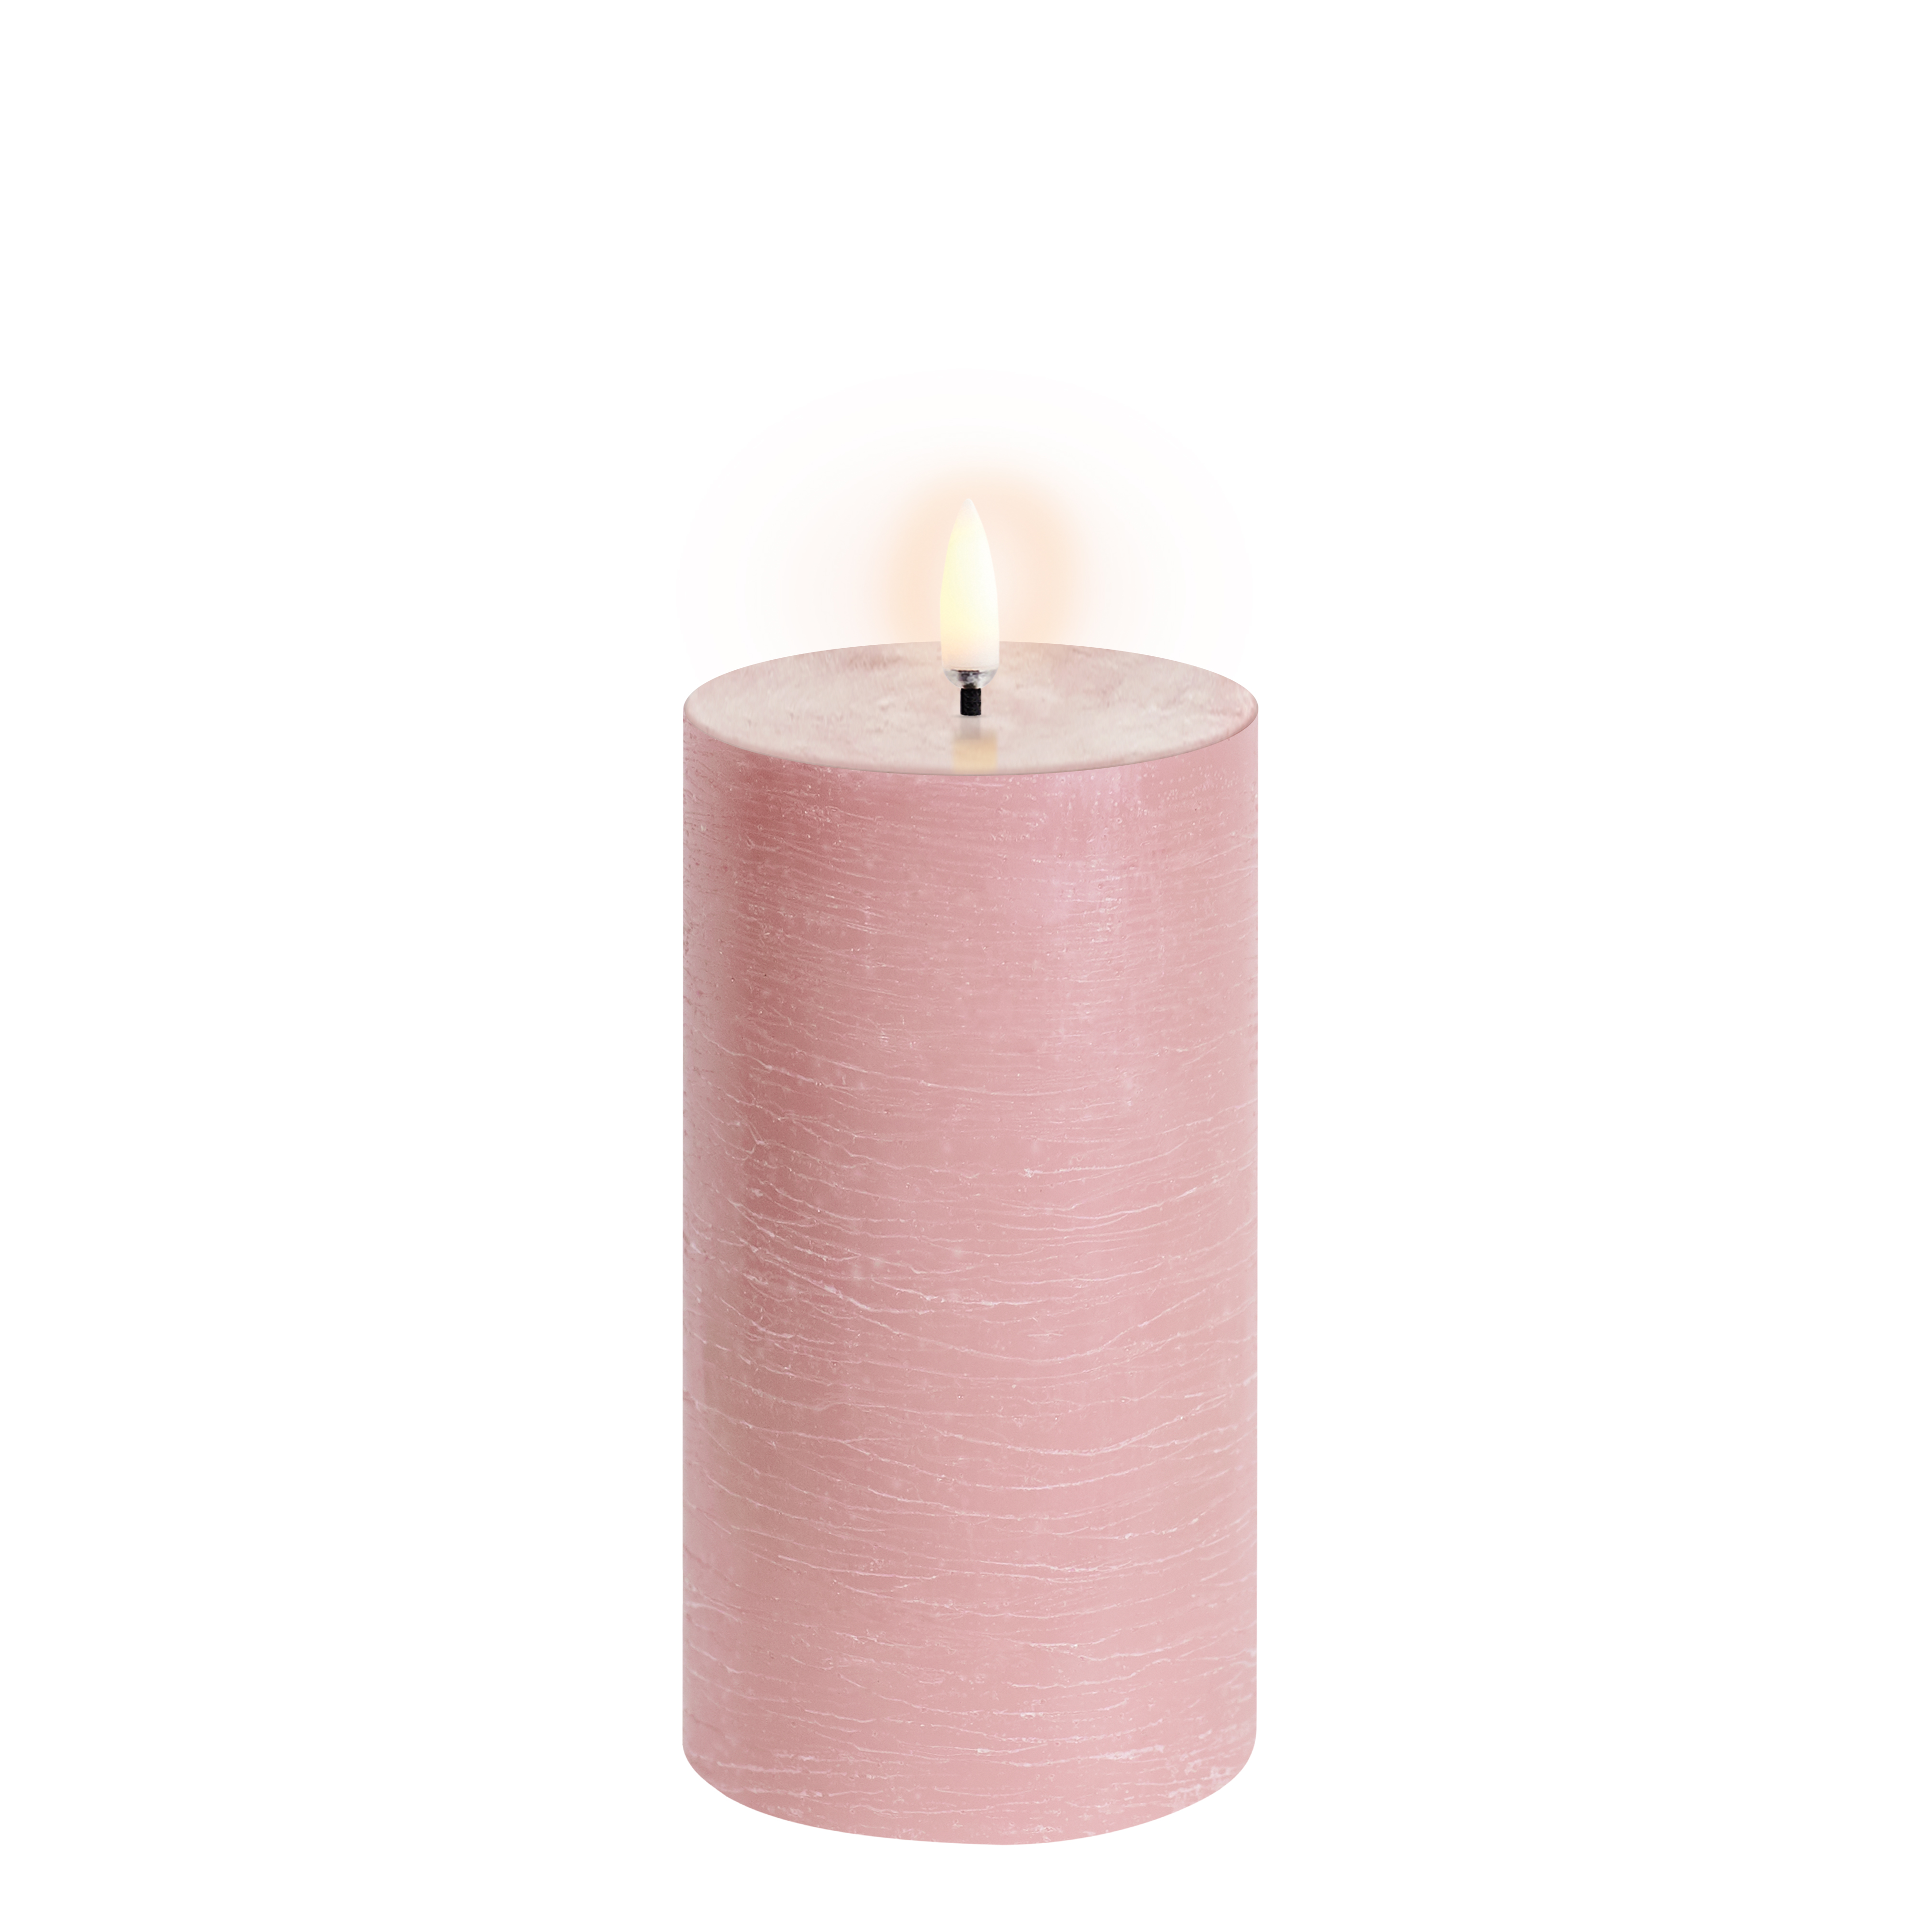 Uyuni - LED pillar candle - Dusty rose, Rustic - 7,8x15 cm (UL-PI-DR-C78015)